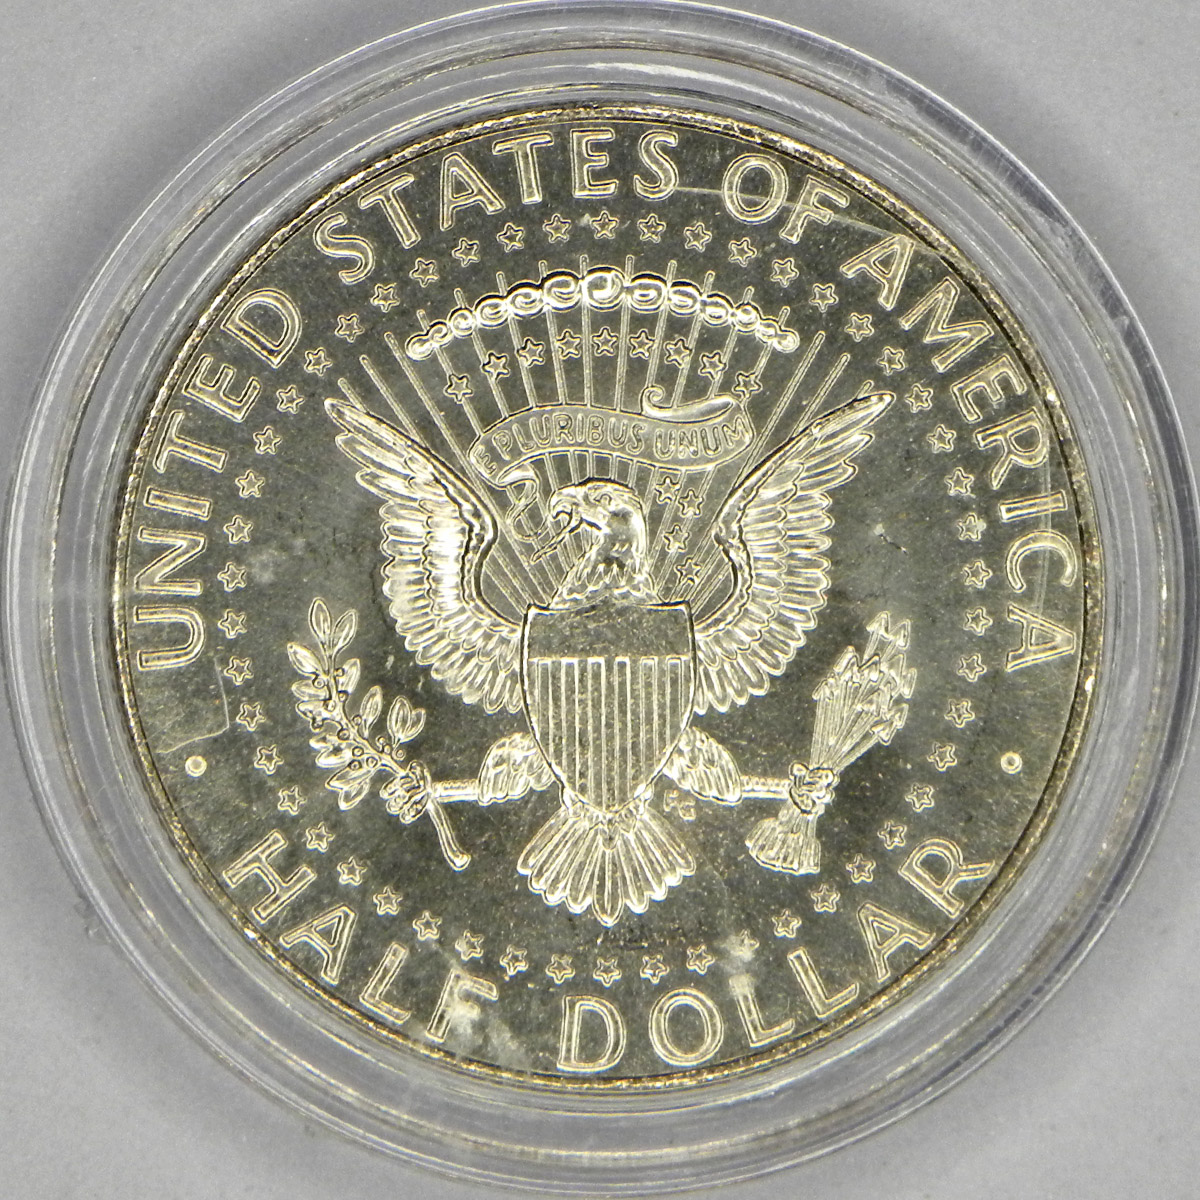 Artemis colorized half dollar (reverse)